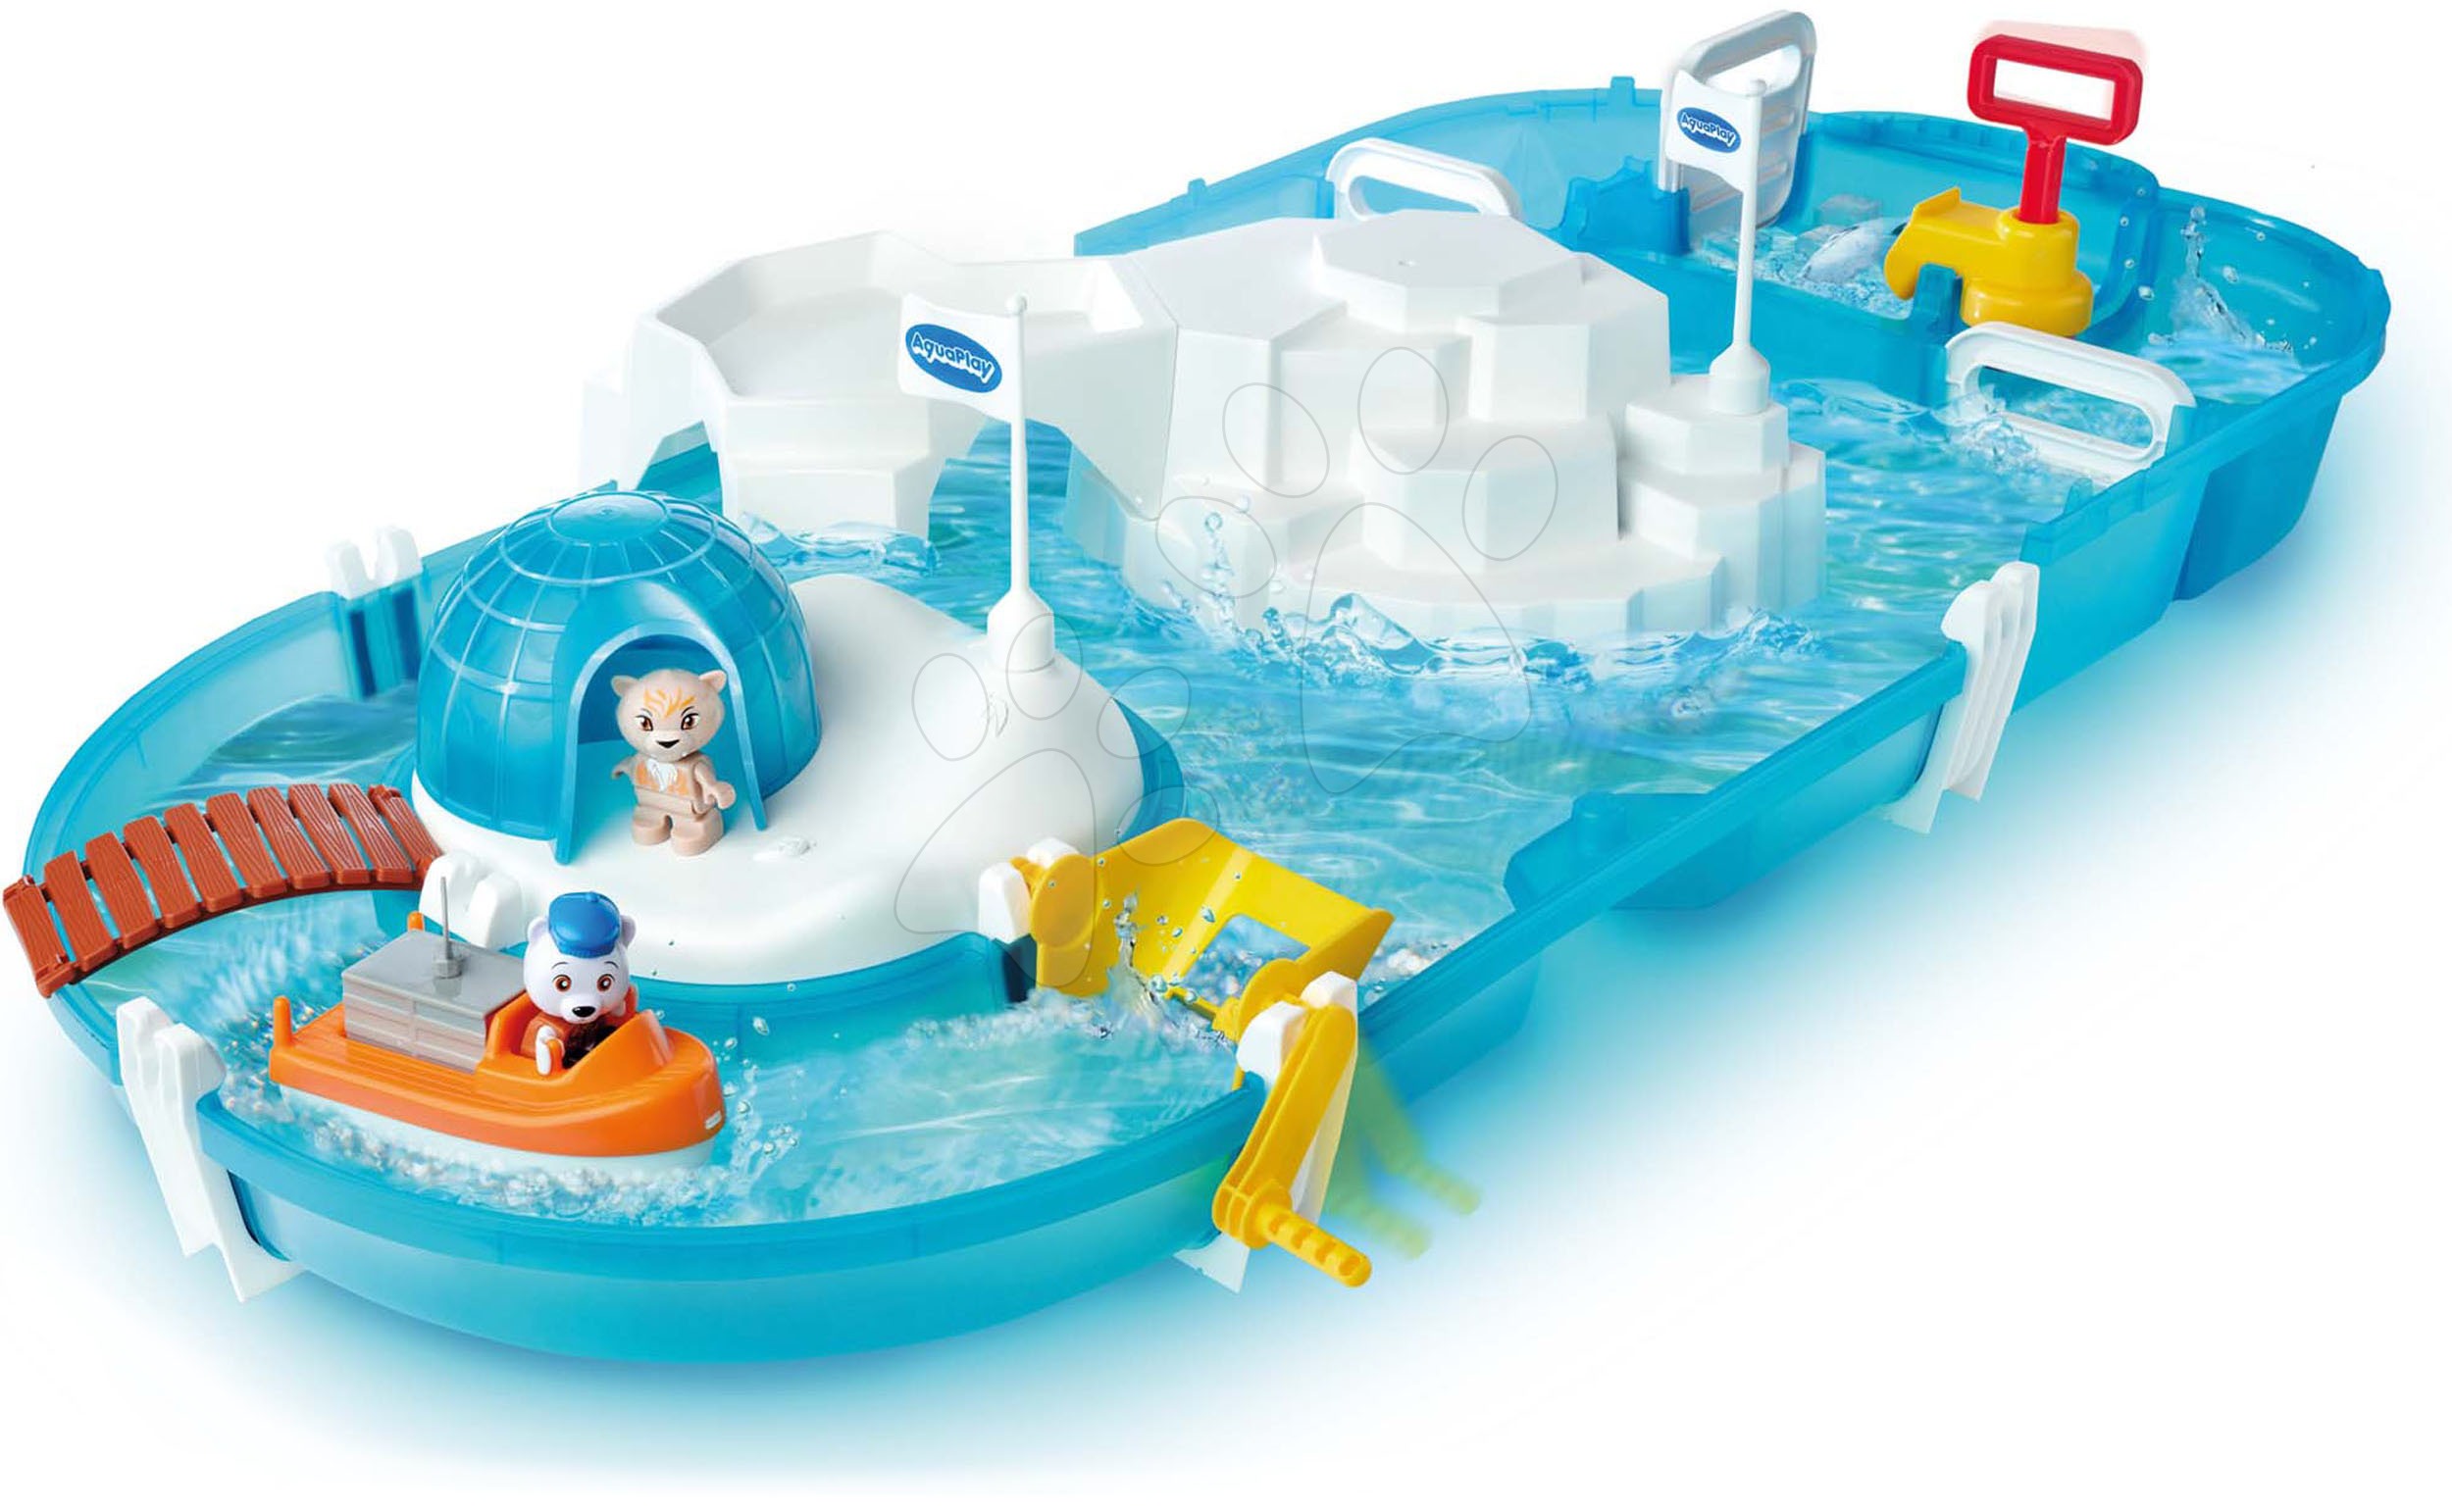 Vodne steze za otroke - Vodna steza Polar AquaPlay raziskovalna postaja z vodno črpalko na severnem tečaju s severnim medvedom na čolnu in 2 figurici